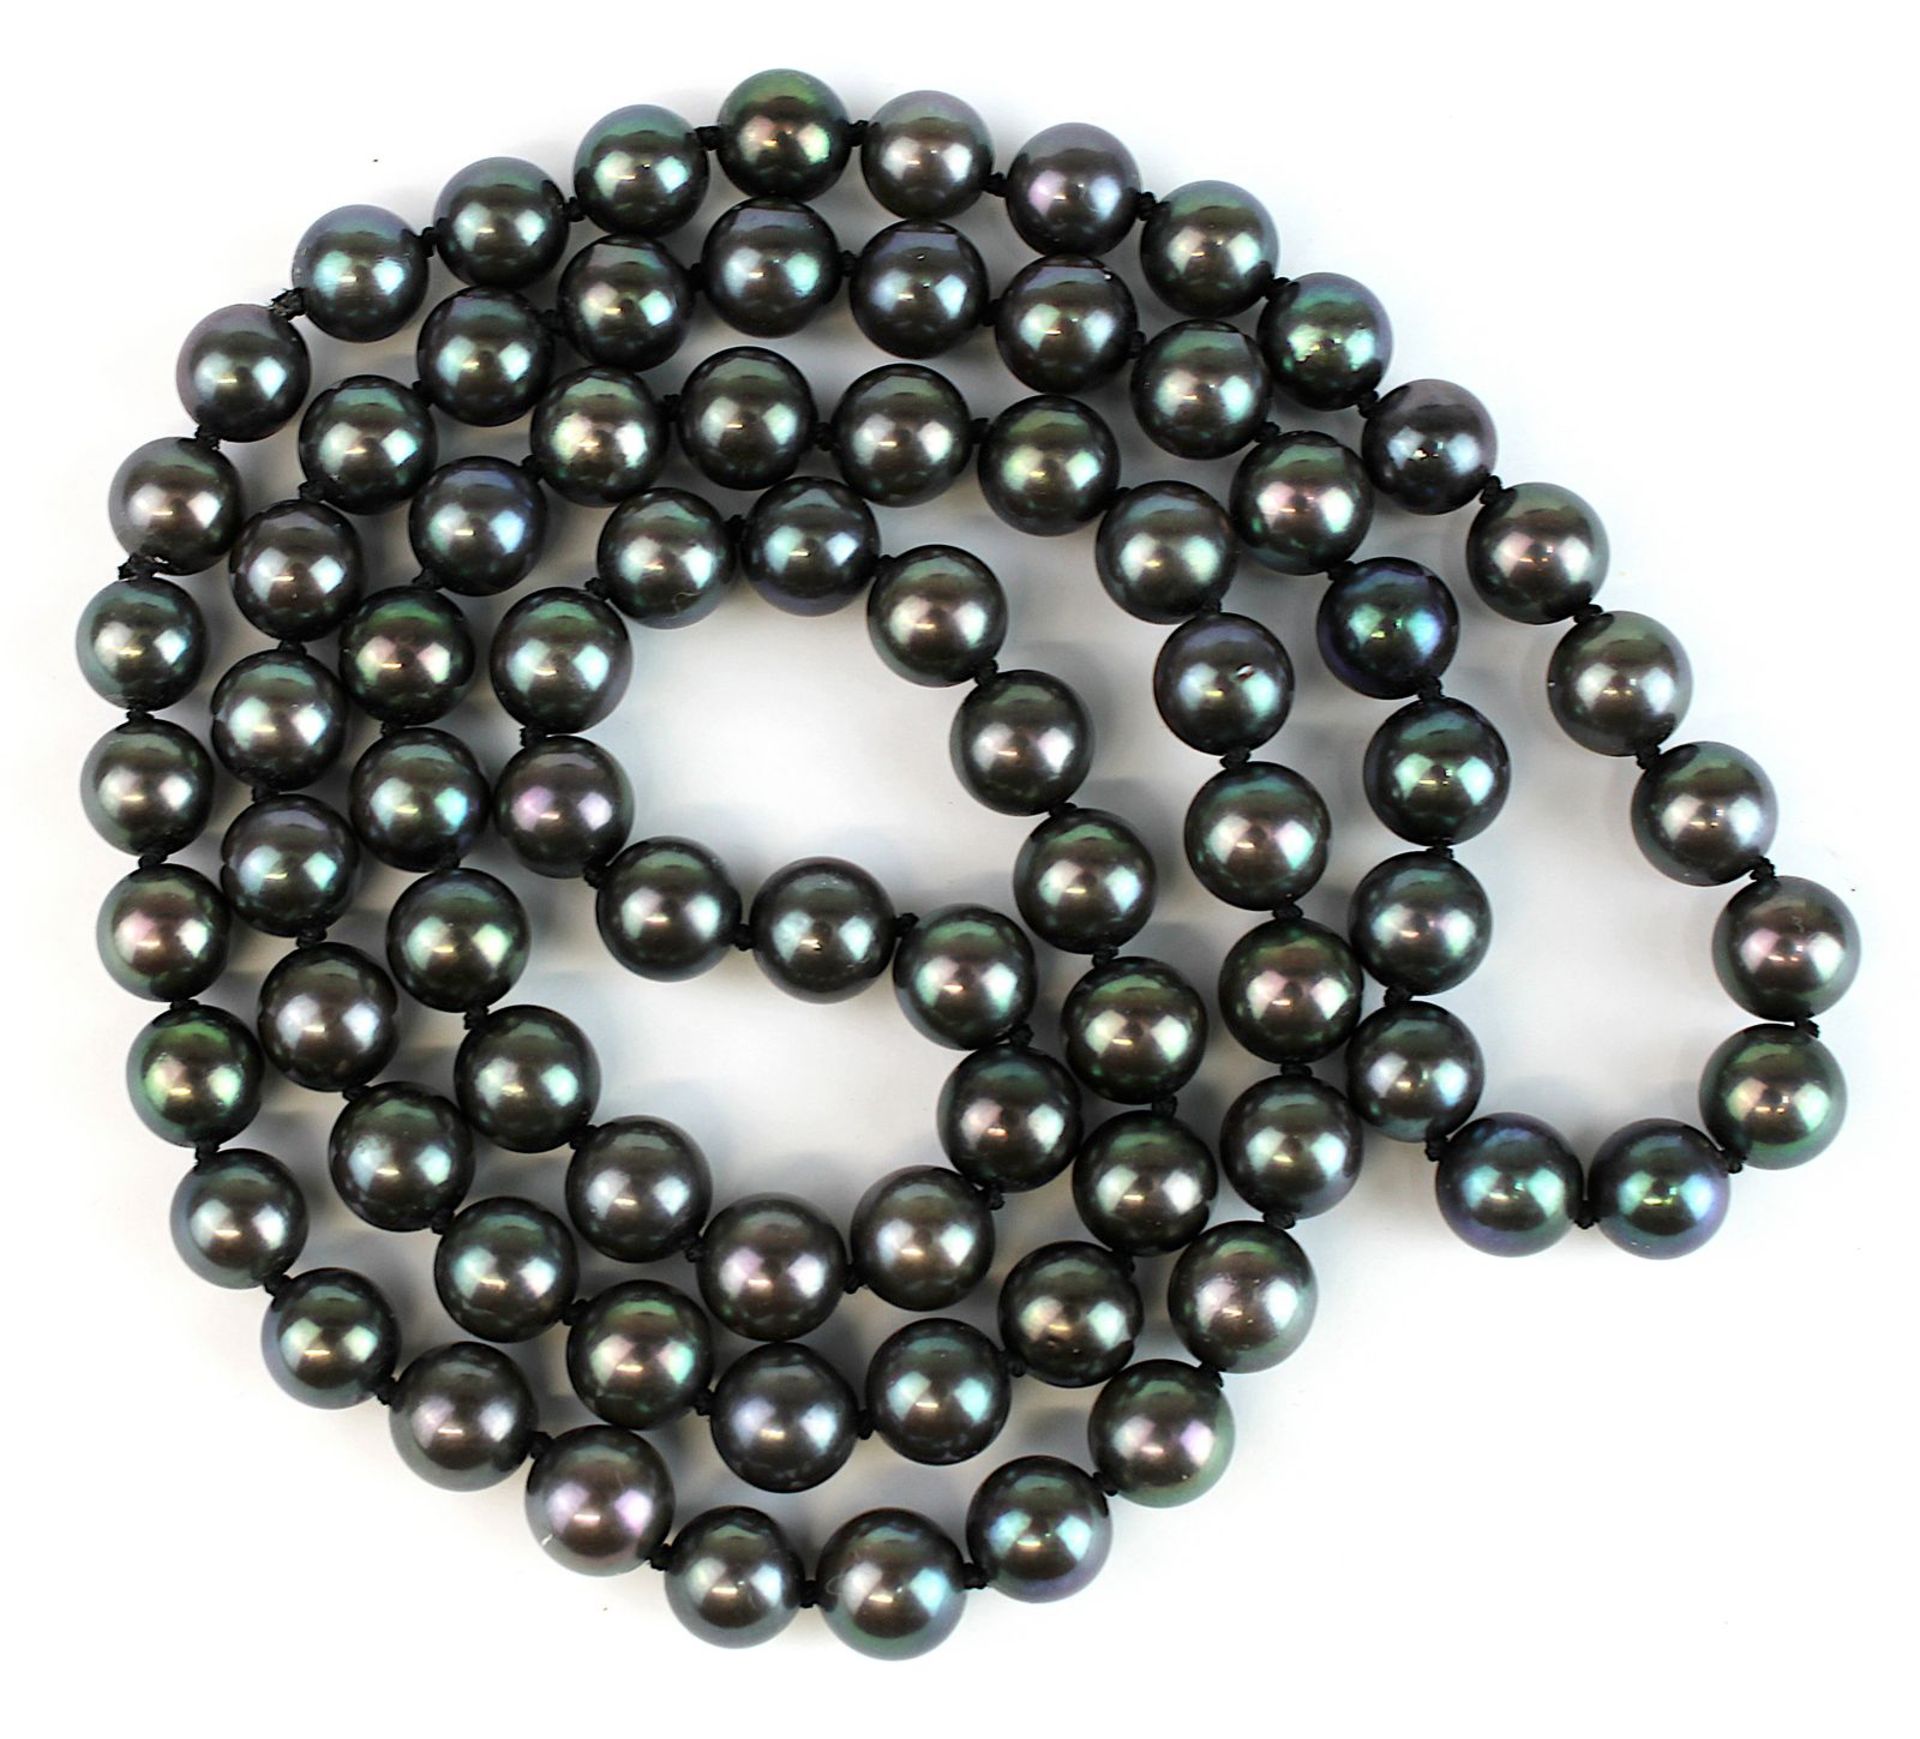 Schwarze Tahiti-Perlenkette, als Endloskette ohne Verschluss, Länge 60 cm, Perlen-Durchmesser 7 - Image 2 of 2